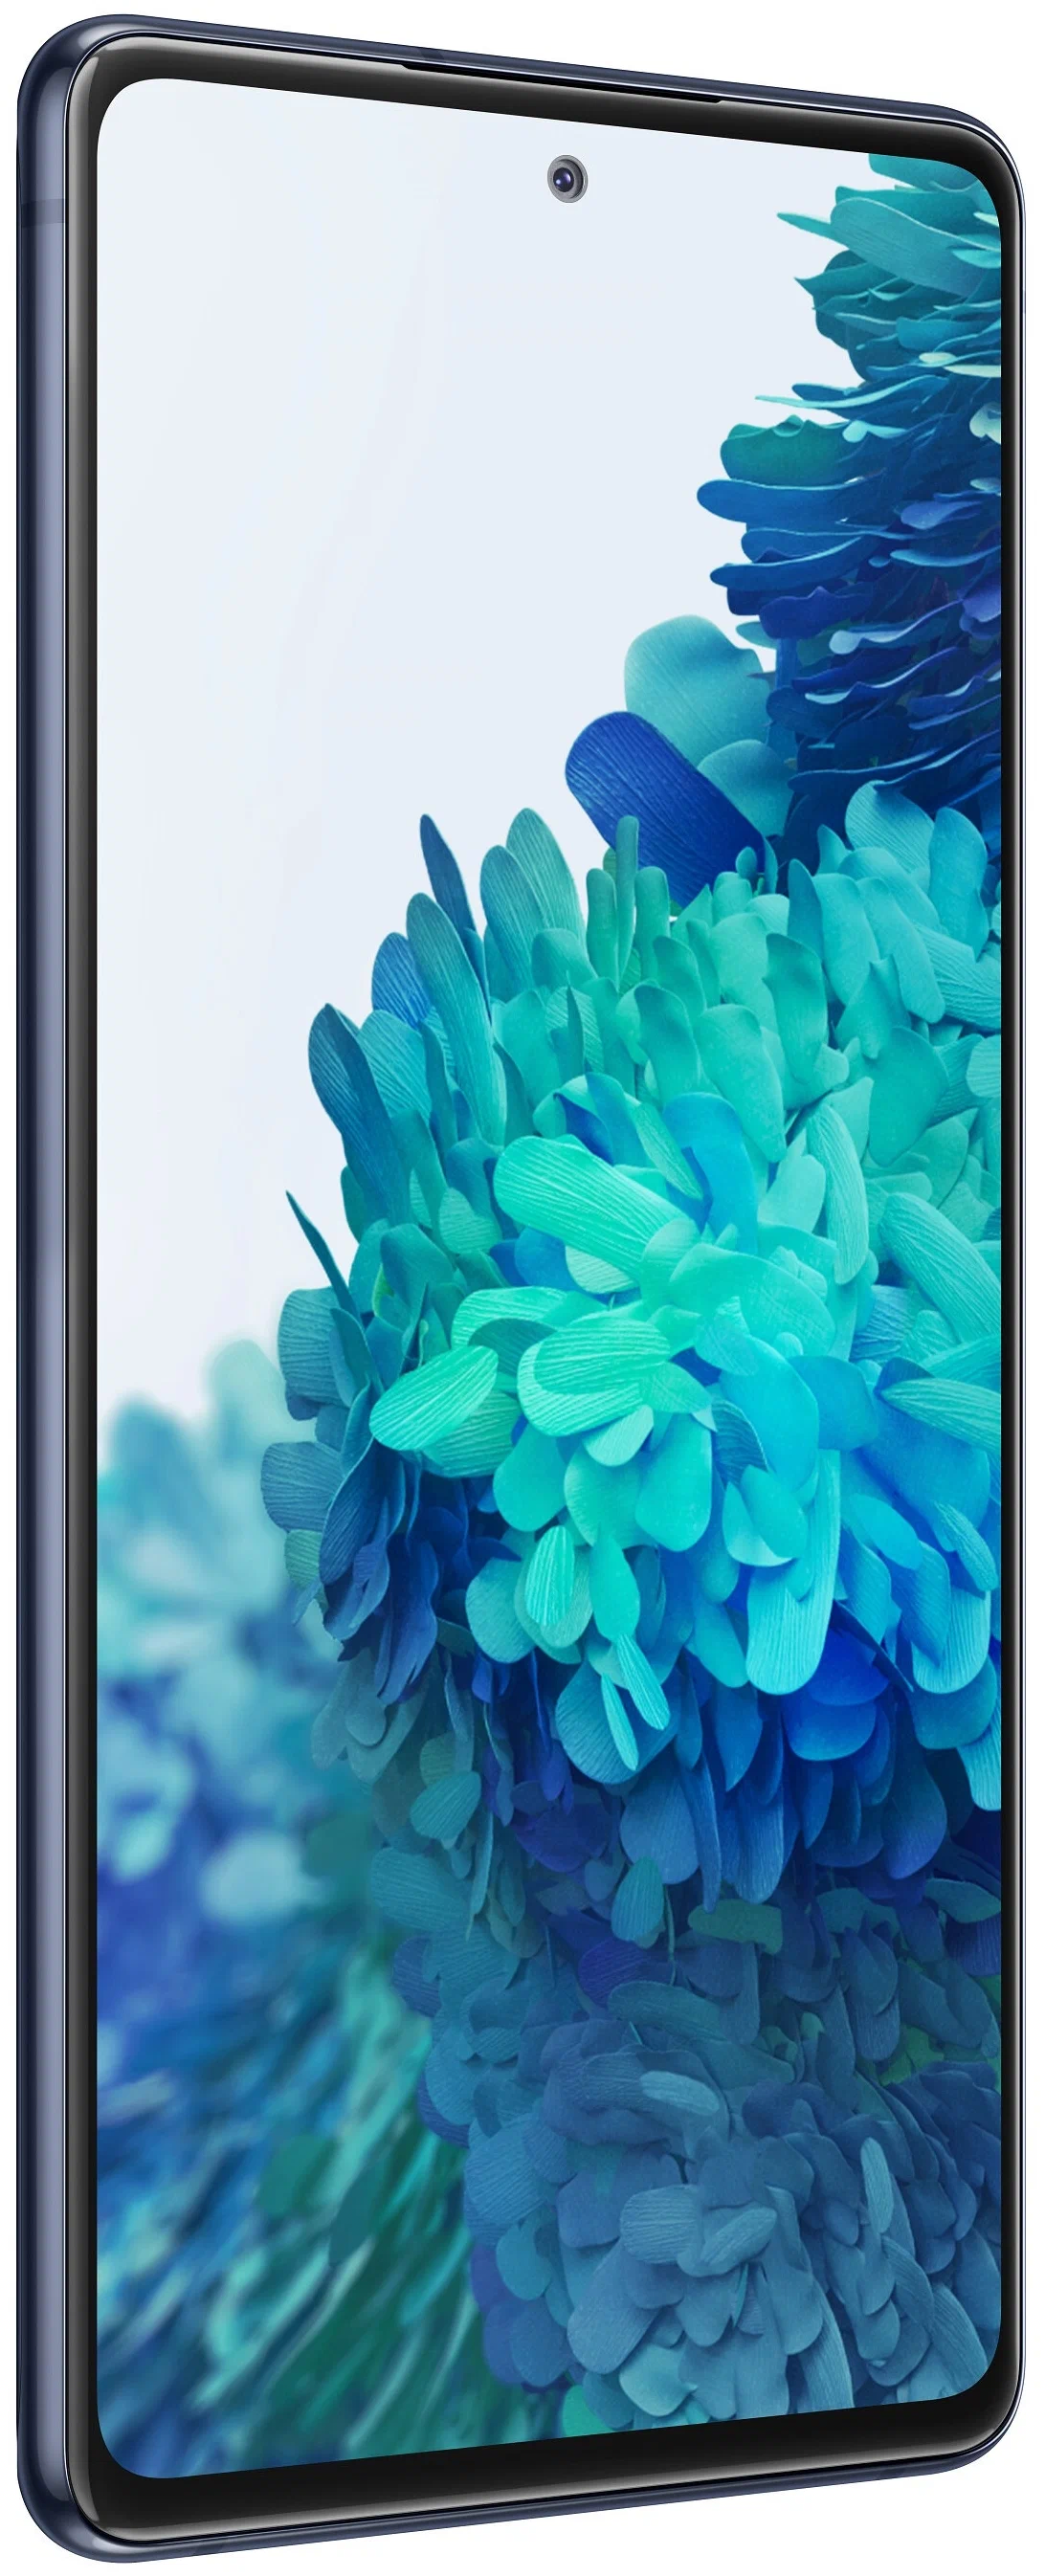 Samsung Galaxy S20 FE (SM-G780F) - аккумулятор: 4500 мА·ч